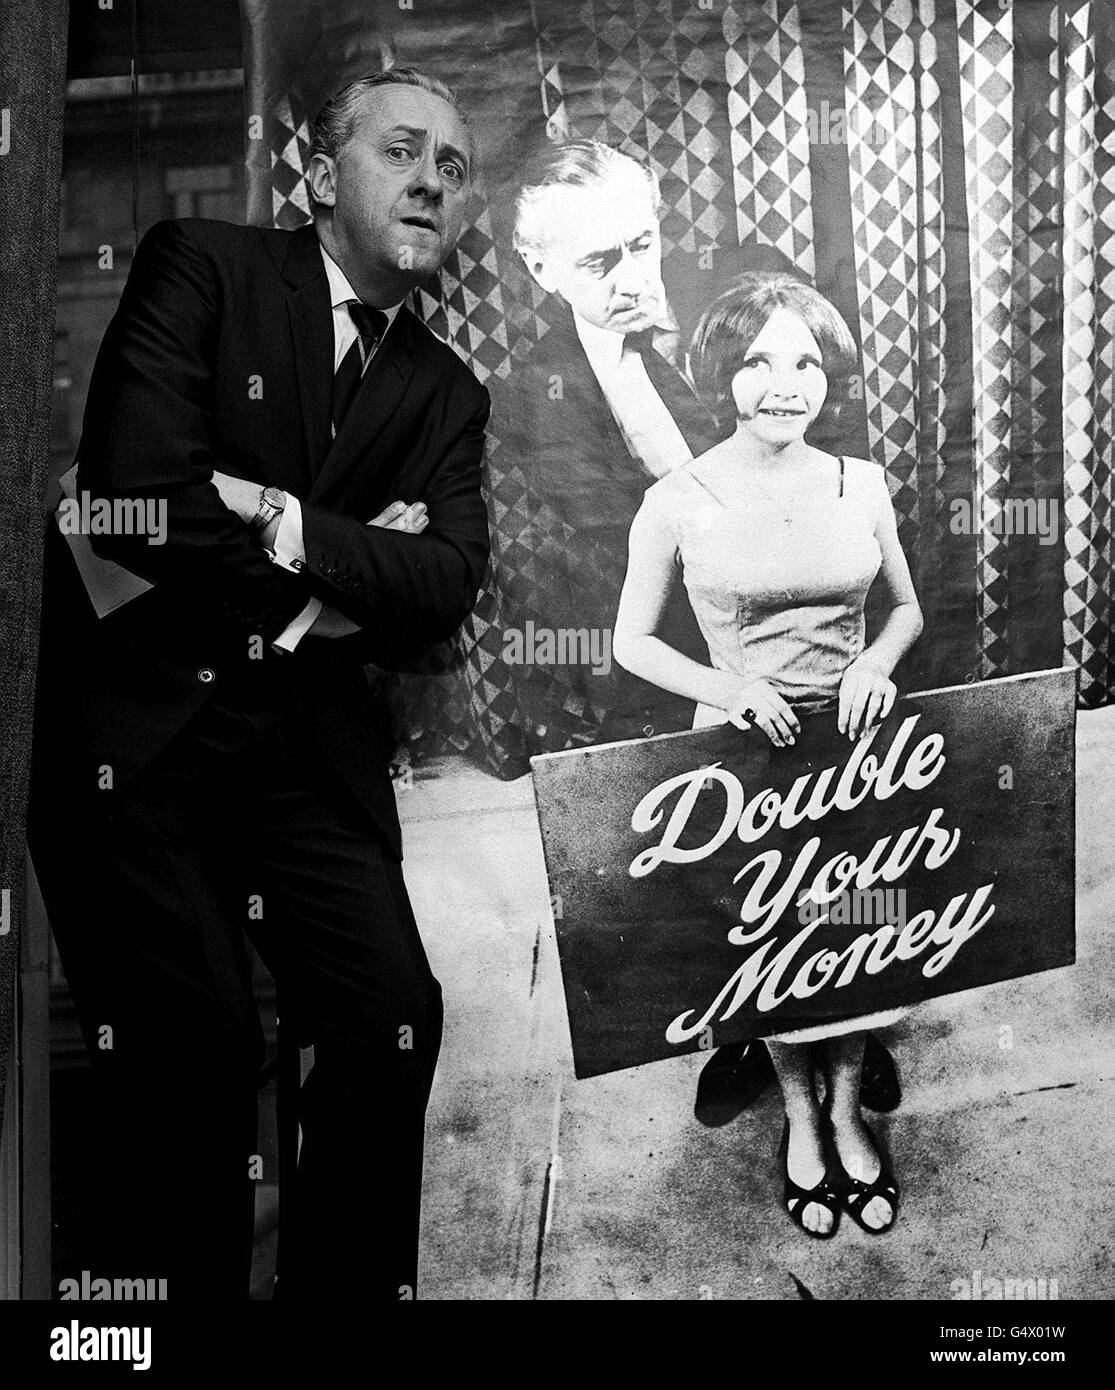 Le quizmaster Hughie Green pose par une affiche de lui-même et de l'assistante Monica Rose, à Londres, pour présenter la bourse de recherche sur les voyages du programme de télévision « Double Your Money ». Banque D'Images